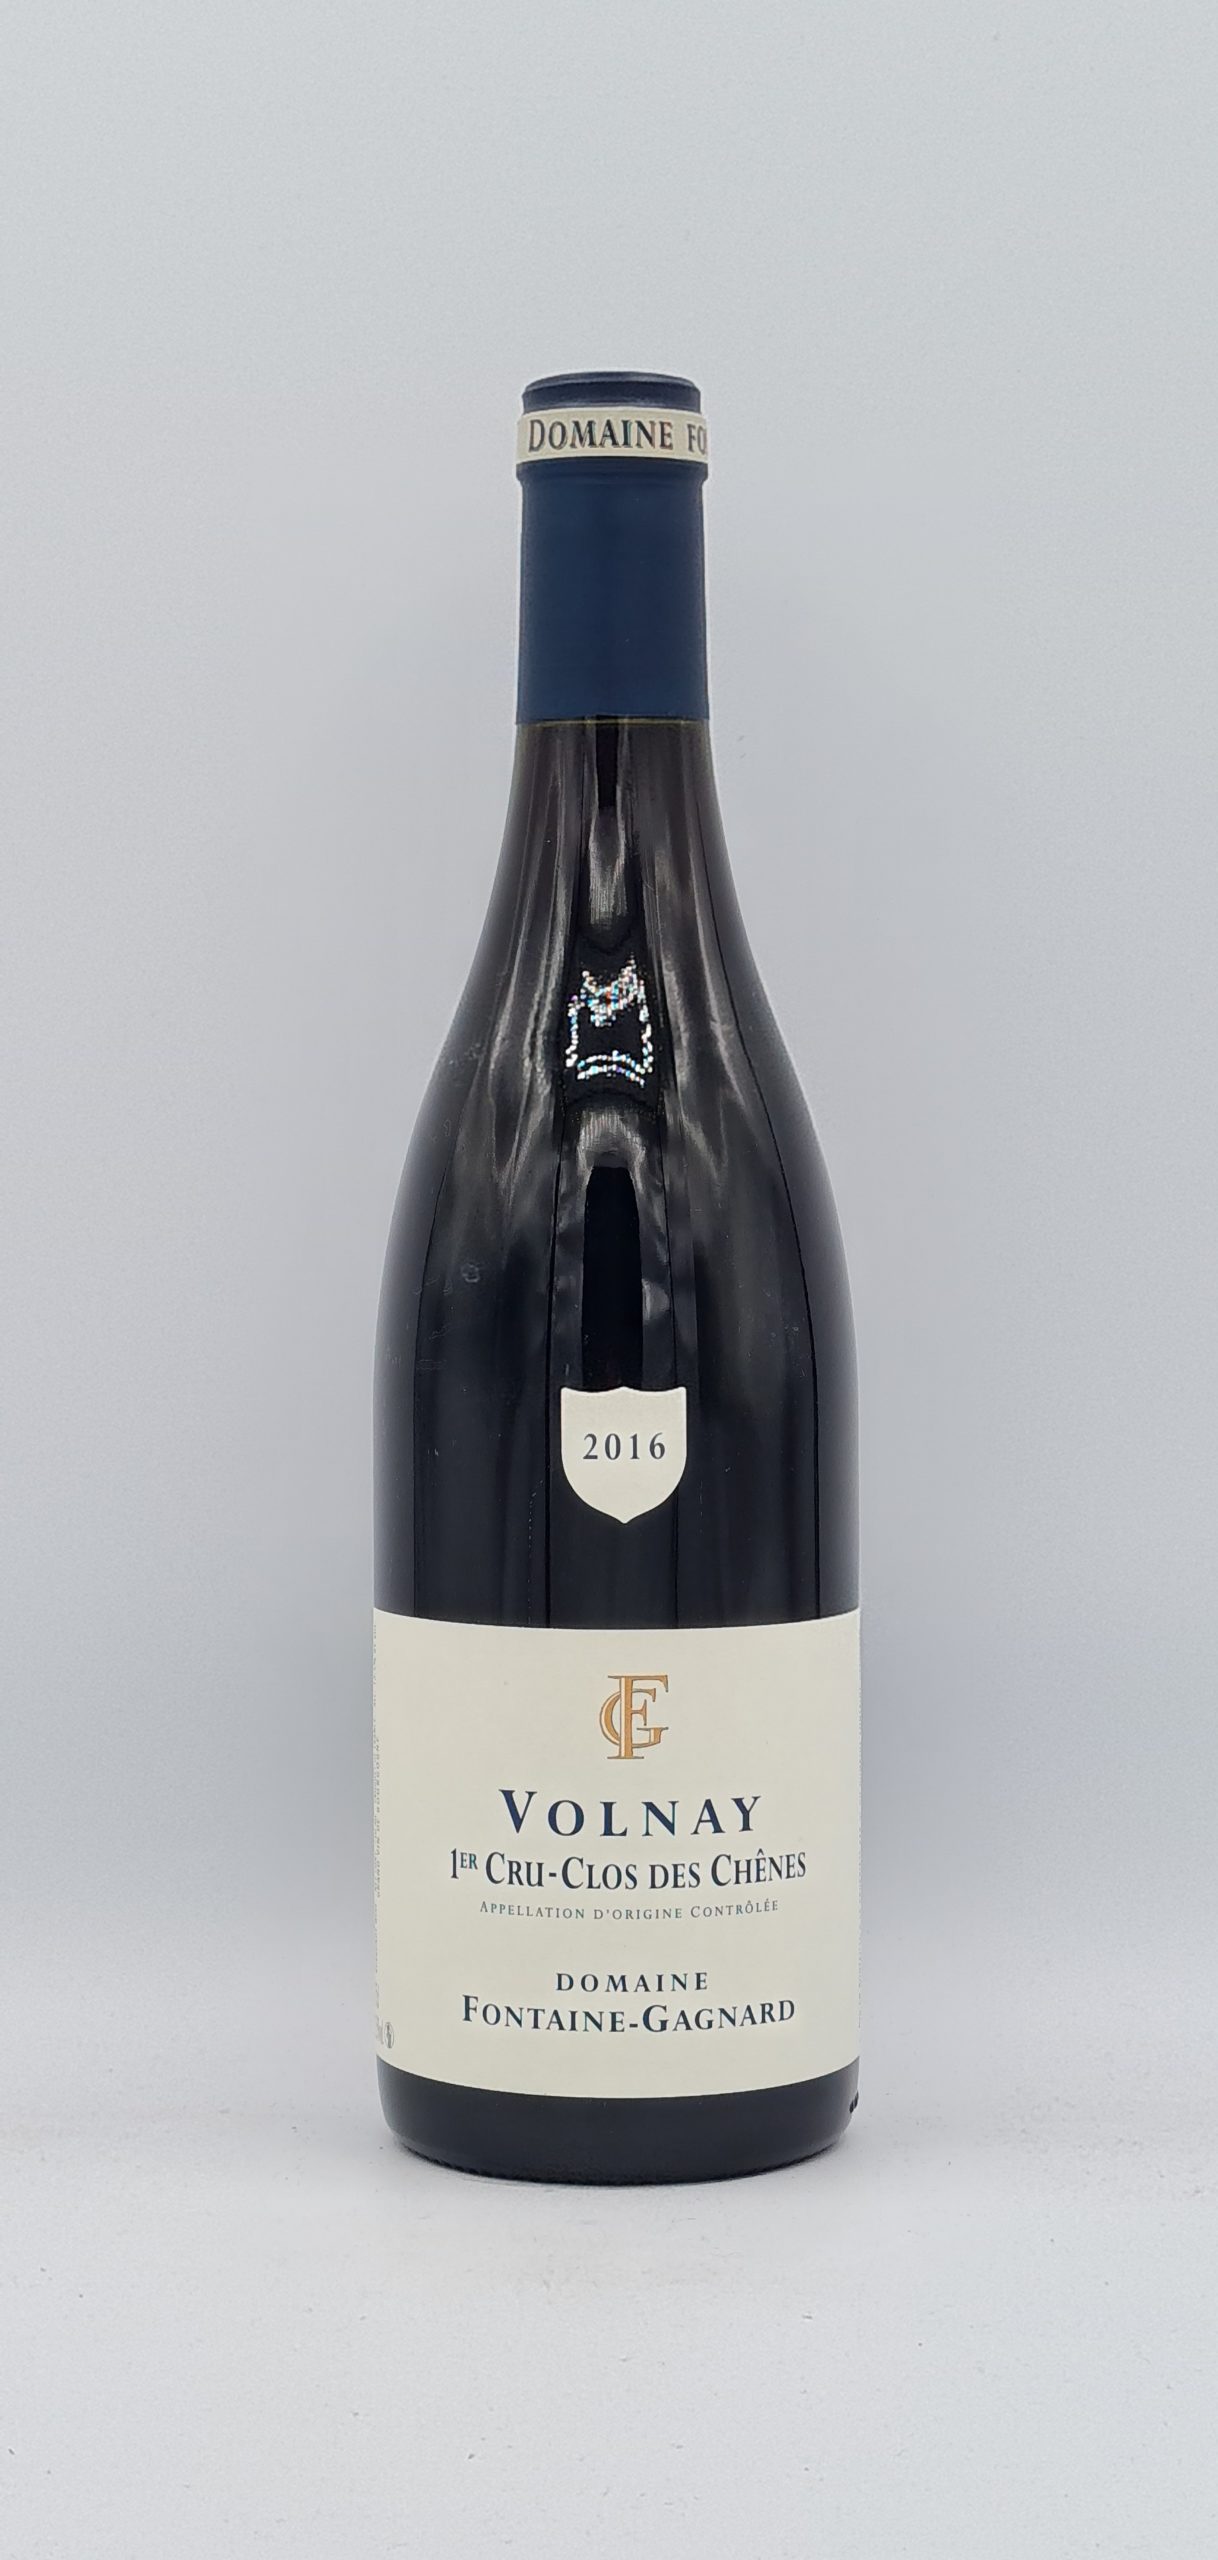 Bourgogne Volnay 1er Cru “Clos des Chênes” 2016 Domaine Fontaine-Gagnard